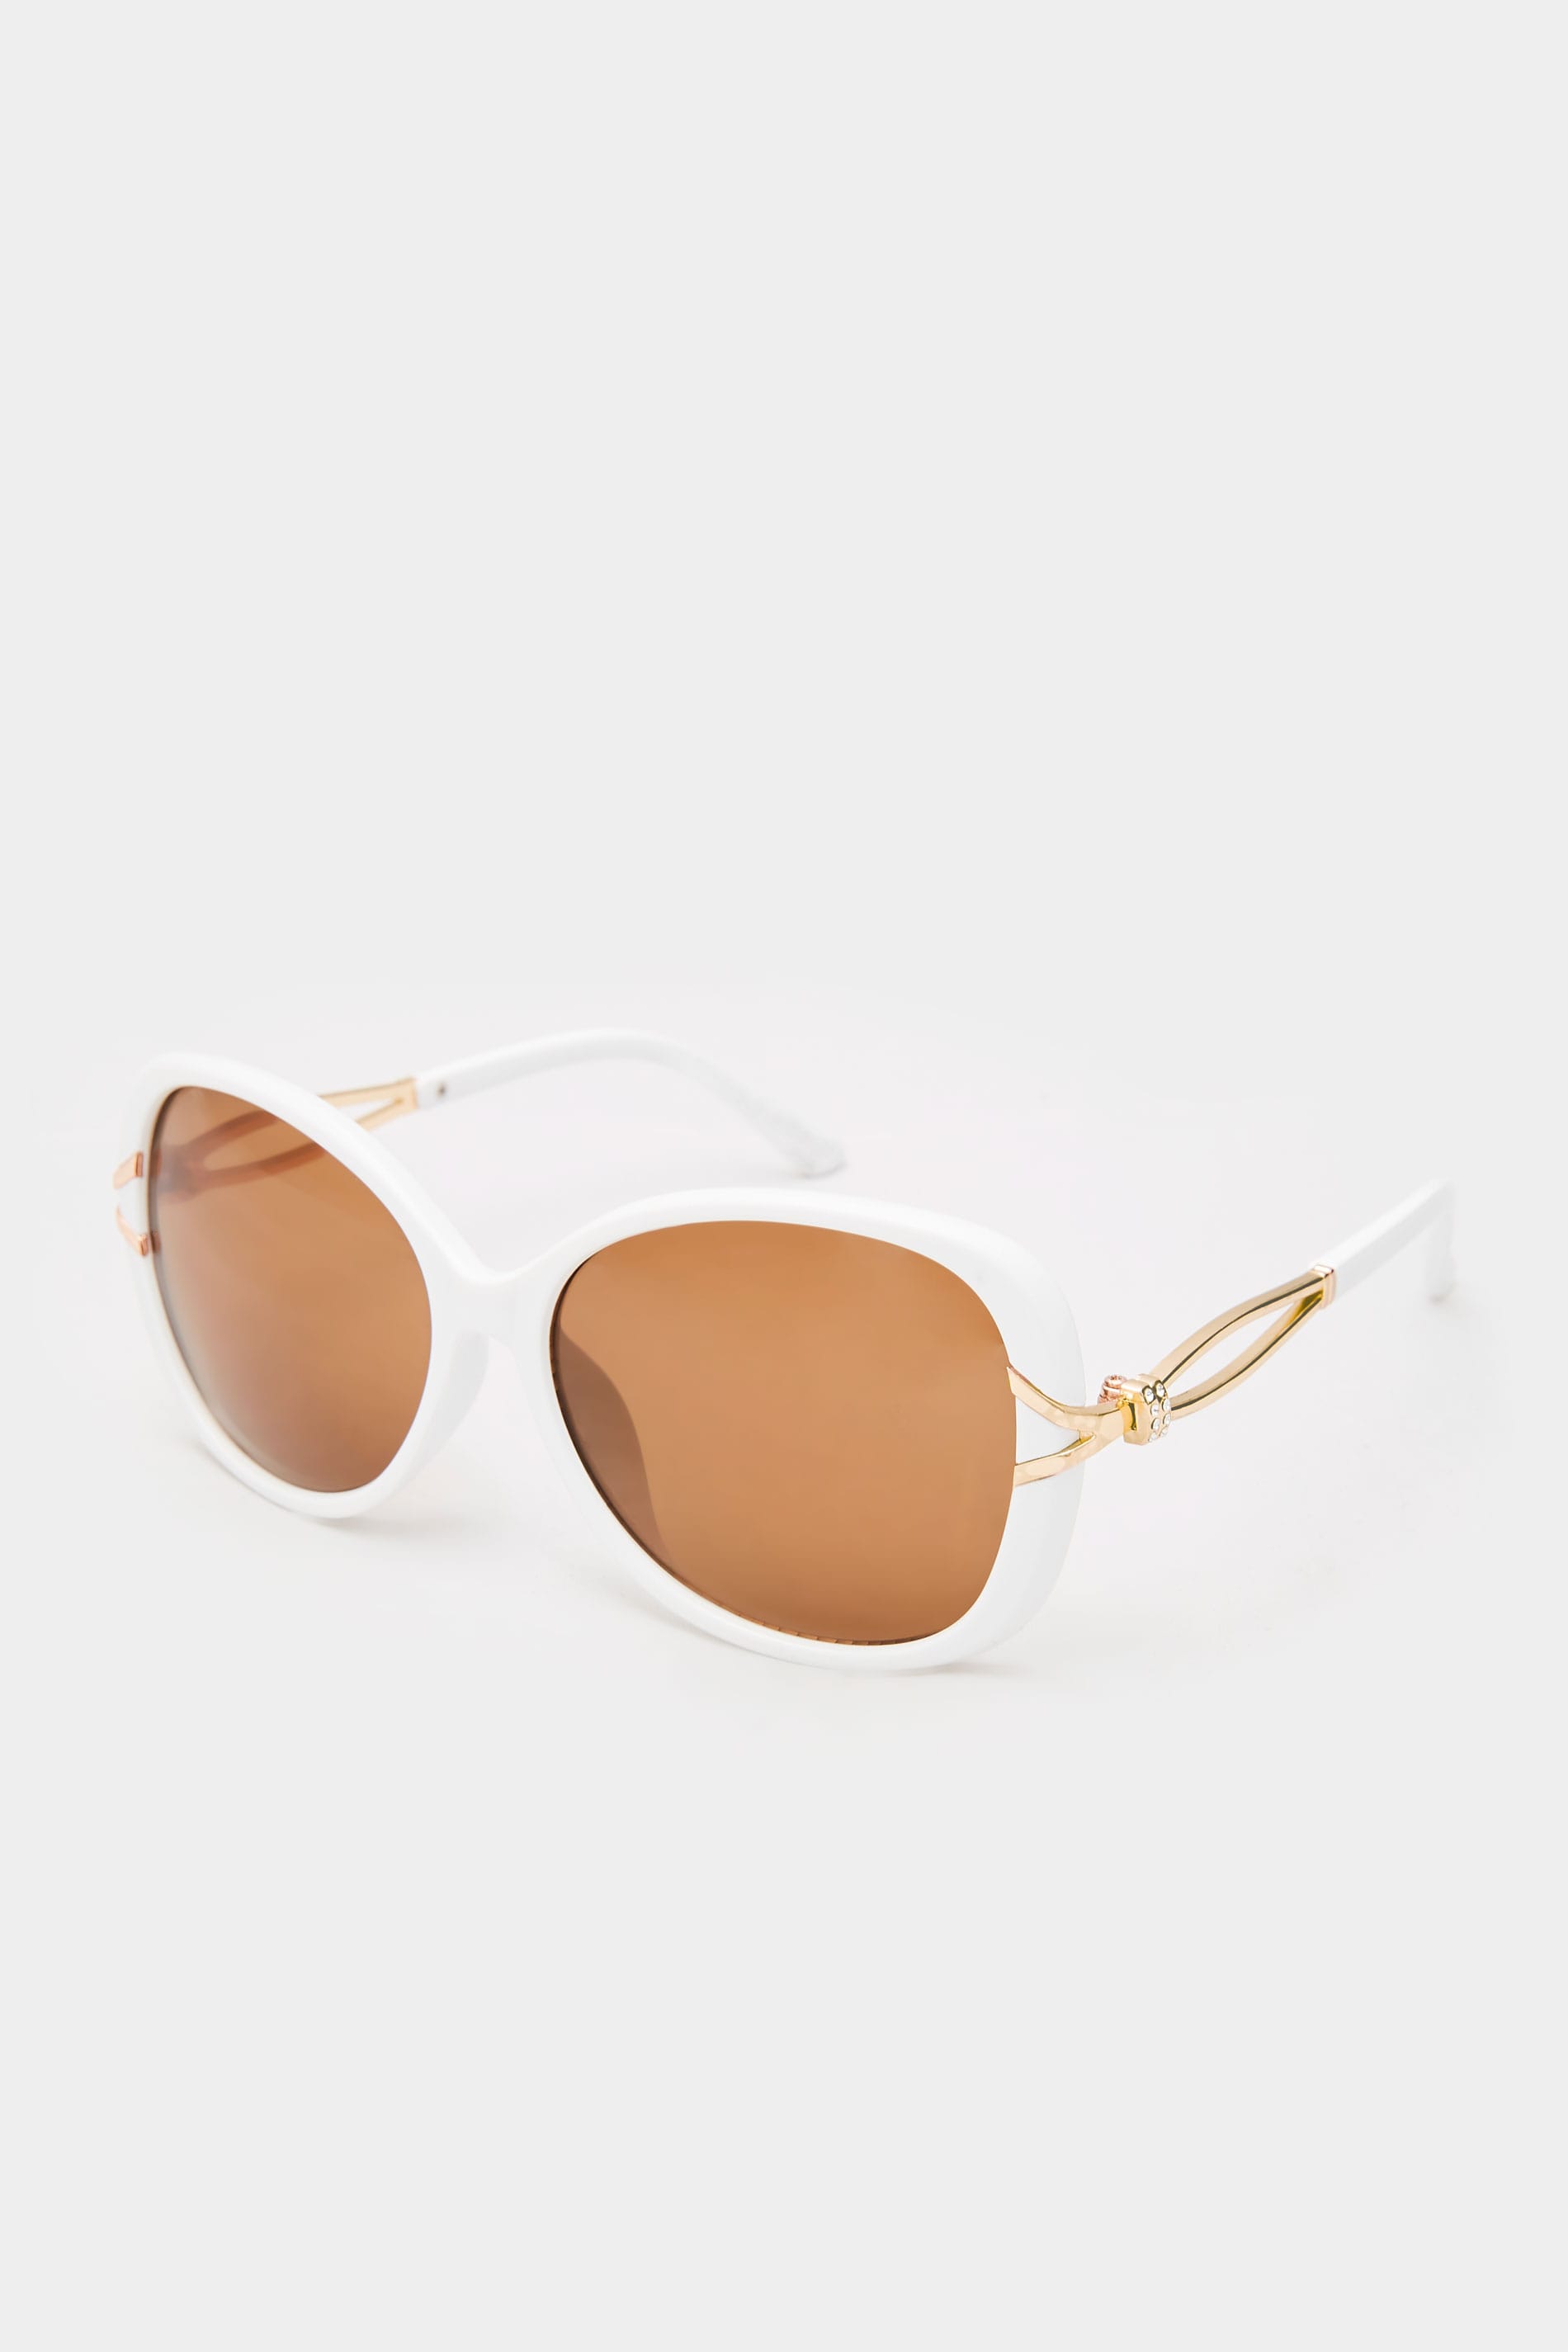 White Oversized Knot Sunglasses_4c7d.jpg